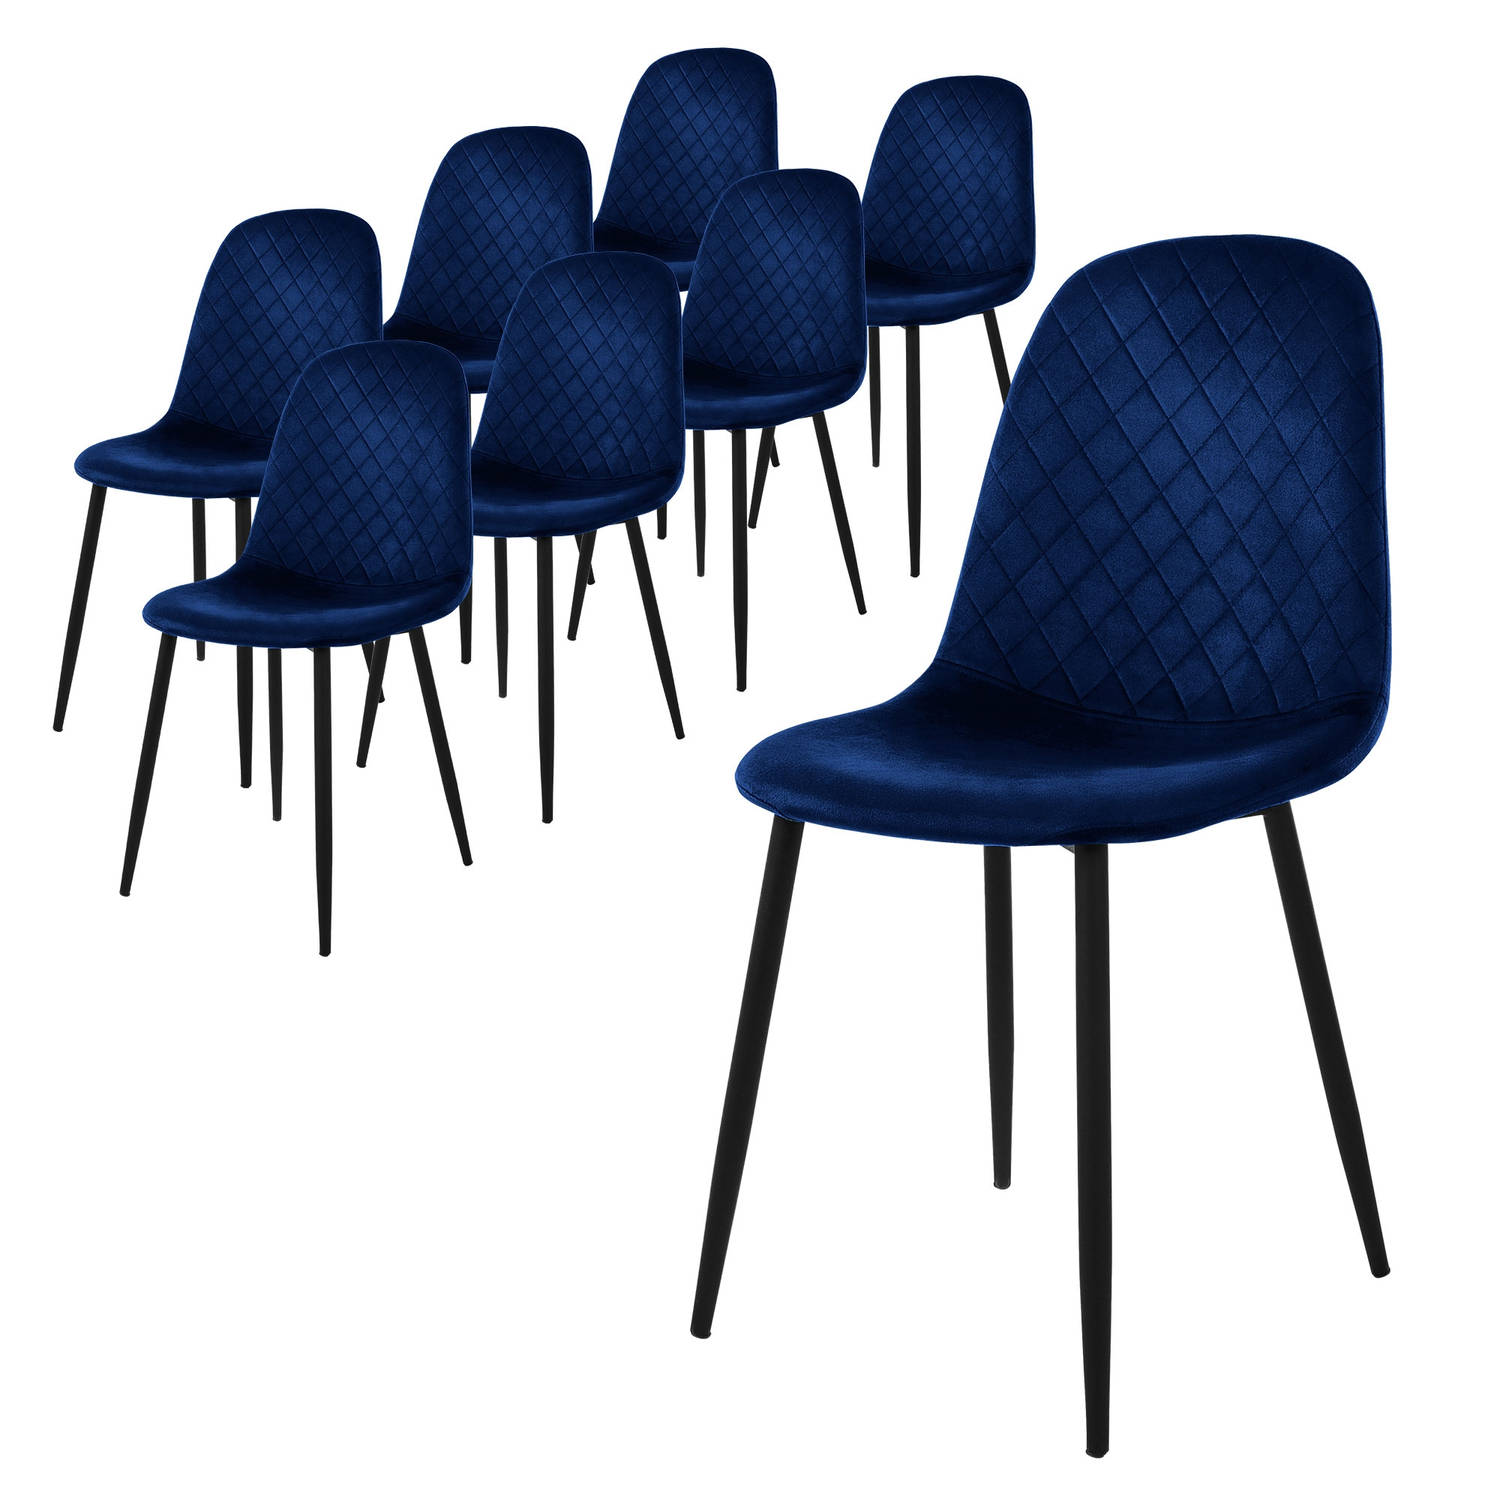 ML-Design eetkamerstoelen set van 8, donkerblauw, keukenstoel met fluwelen bekleding, woonkamerstoel met rugleuning, gestoffeerde stoel met metalen poten, ergonomische stoel voor e